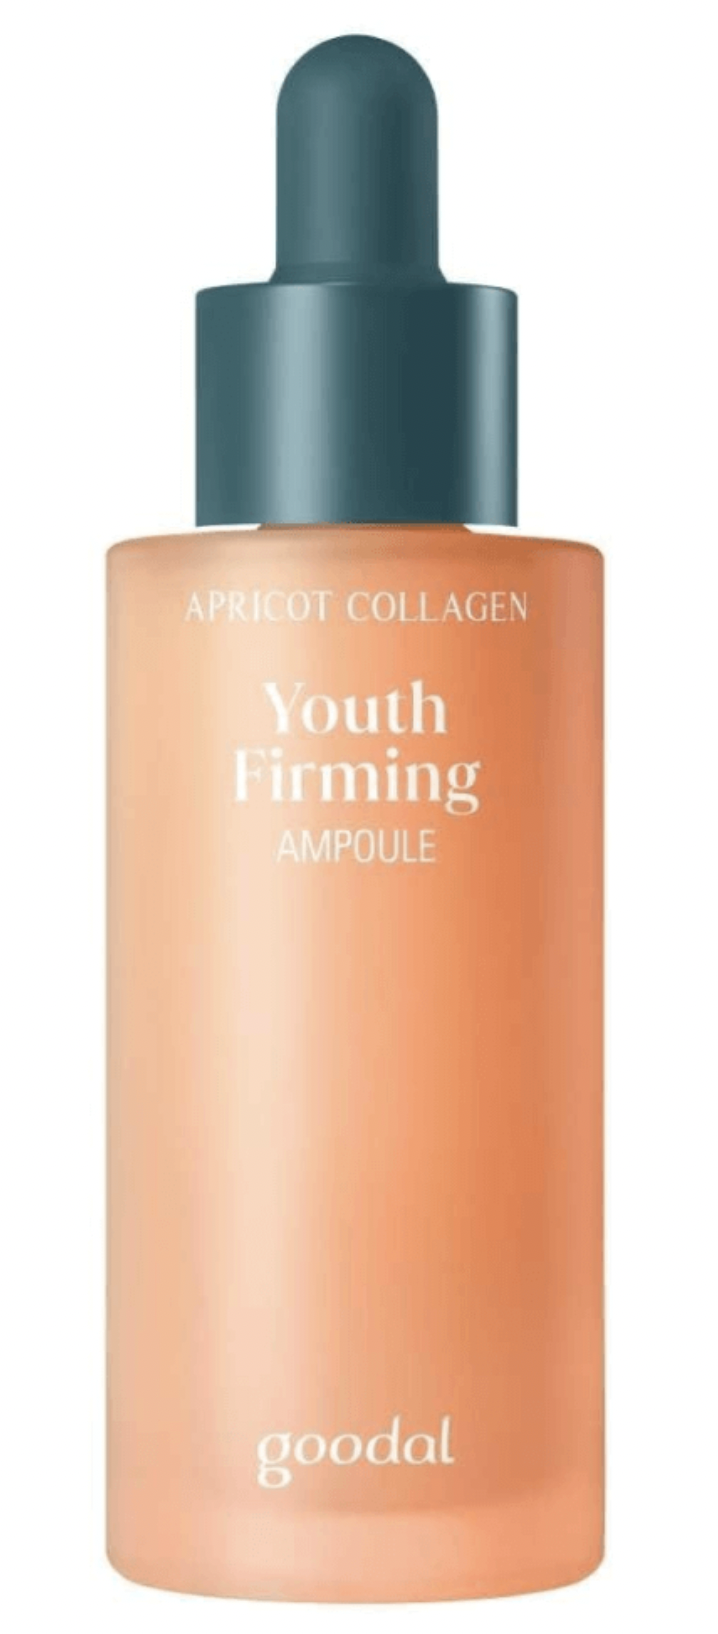 Укрепляющая липосомная ампула Goodal с абрикосом Apricot Collagen Youth Firming Ampoule лэтуаль dear molly эссенция с коллагеном укрепляющая essence collagen firming